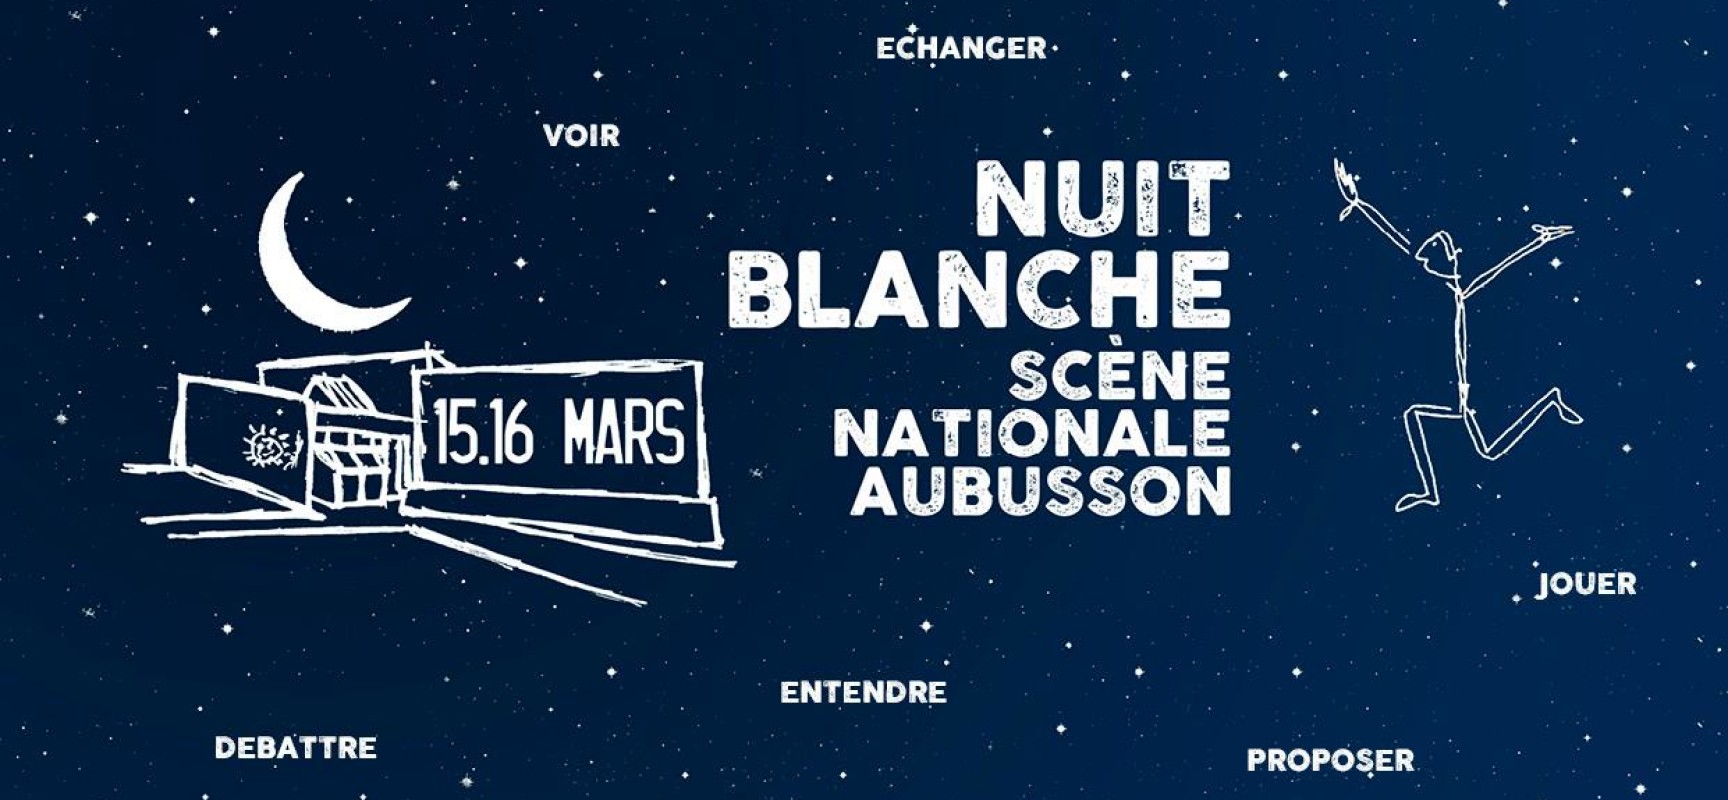 Nuit blanche – Scène Nationale Aubusson